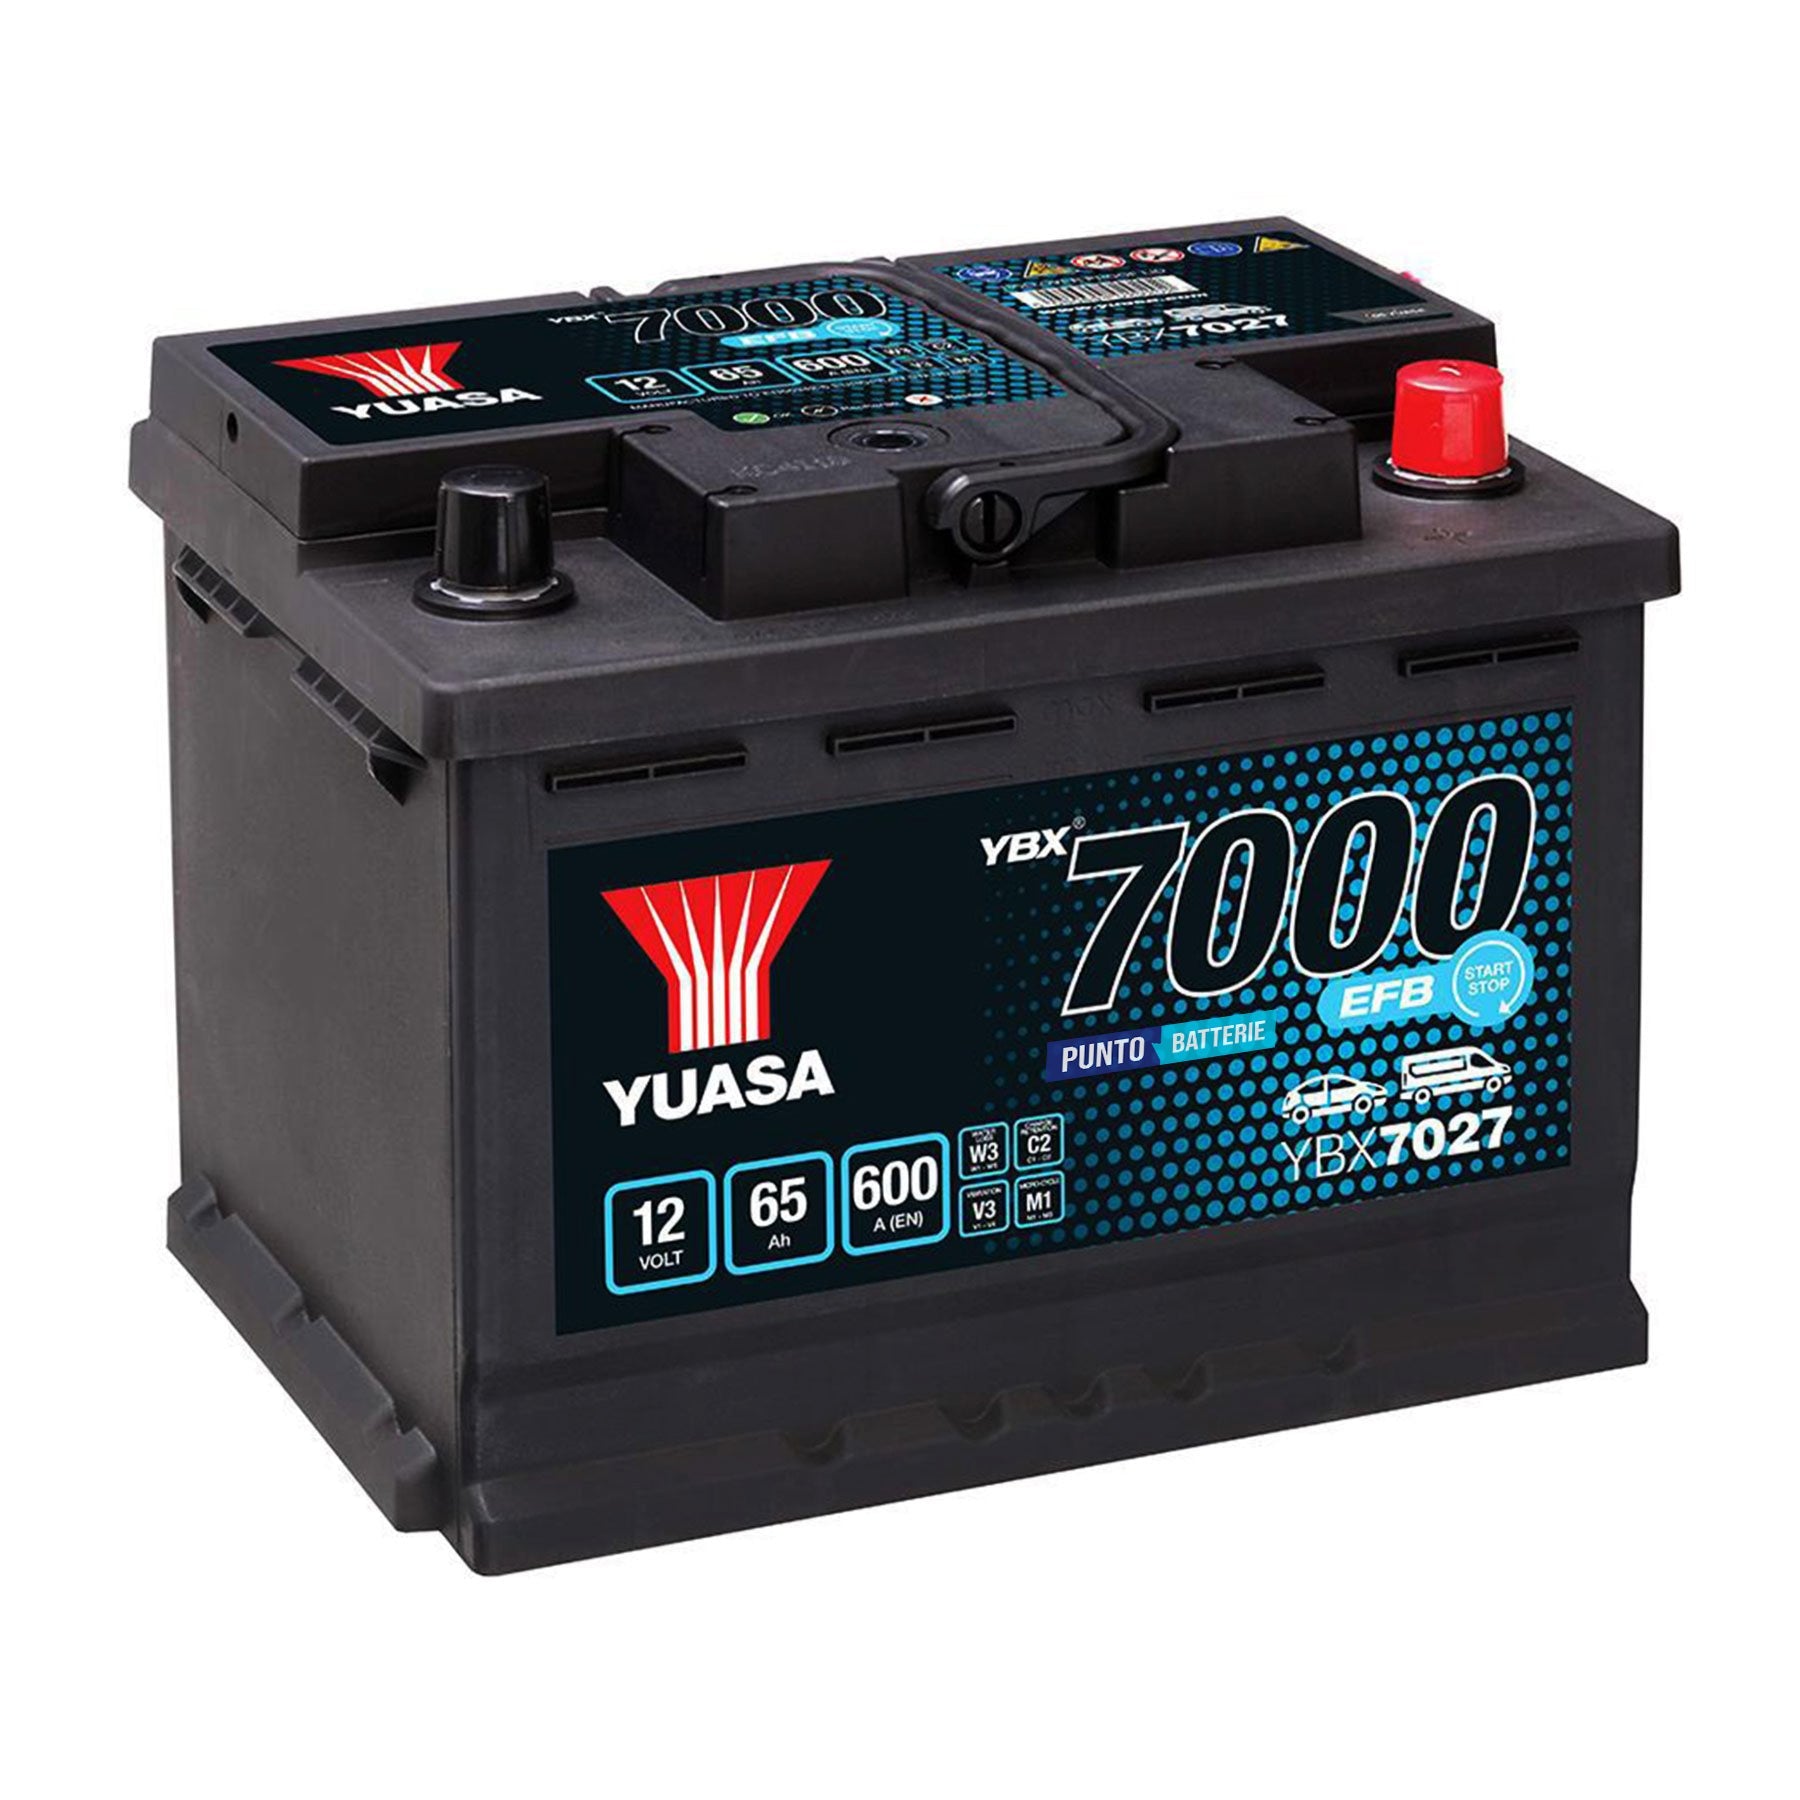 Batteria originale Yuasa YBX7000 YBX7027, dimensioni 243 x 175 x 190, polo positivo a destra, 12 volt, 65 amperora, 600 ampere, EFB. Batteria per auto e veicoli leggeri con start e stop.